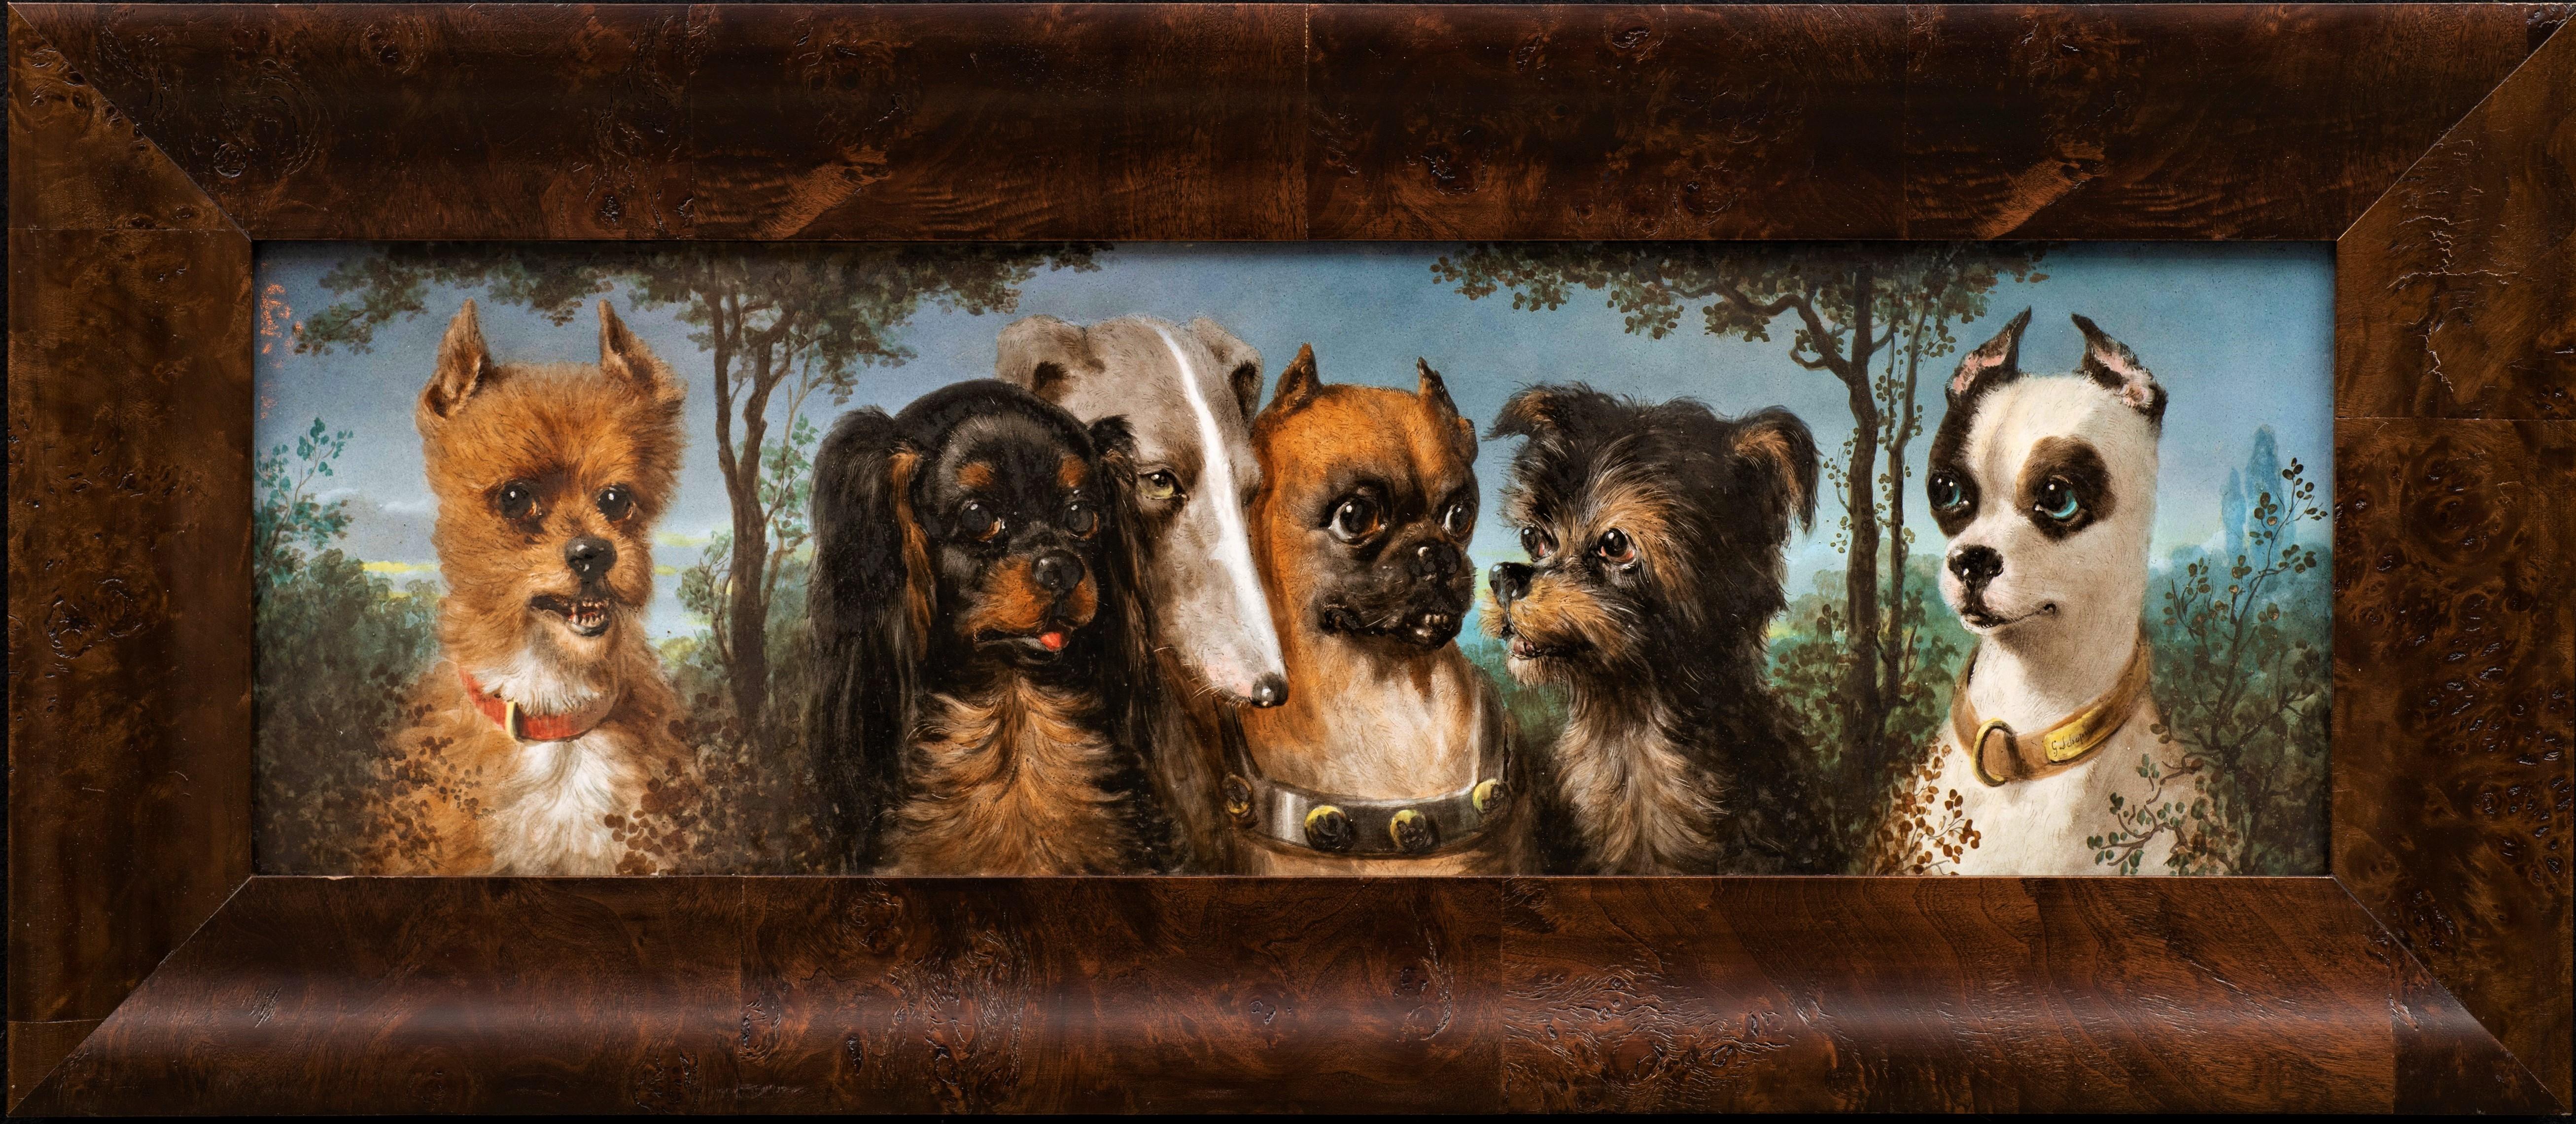 Antique Portrait of 6 Dogs on Porcelain by Maison Pichenot-Loebnitz ca. 1870s